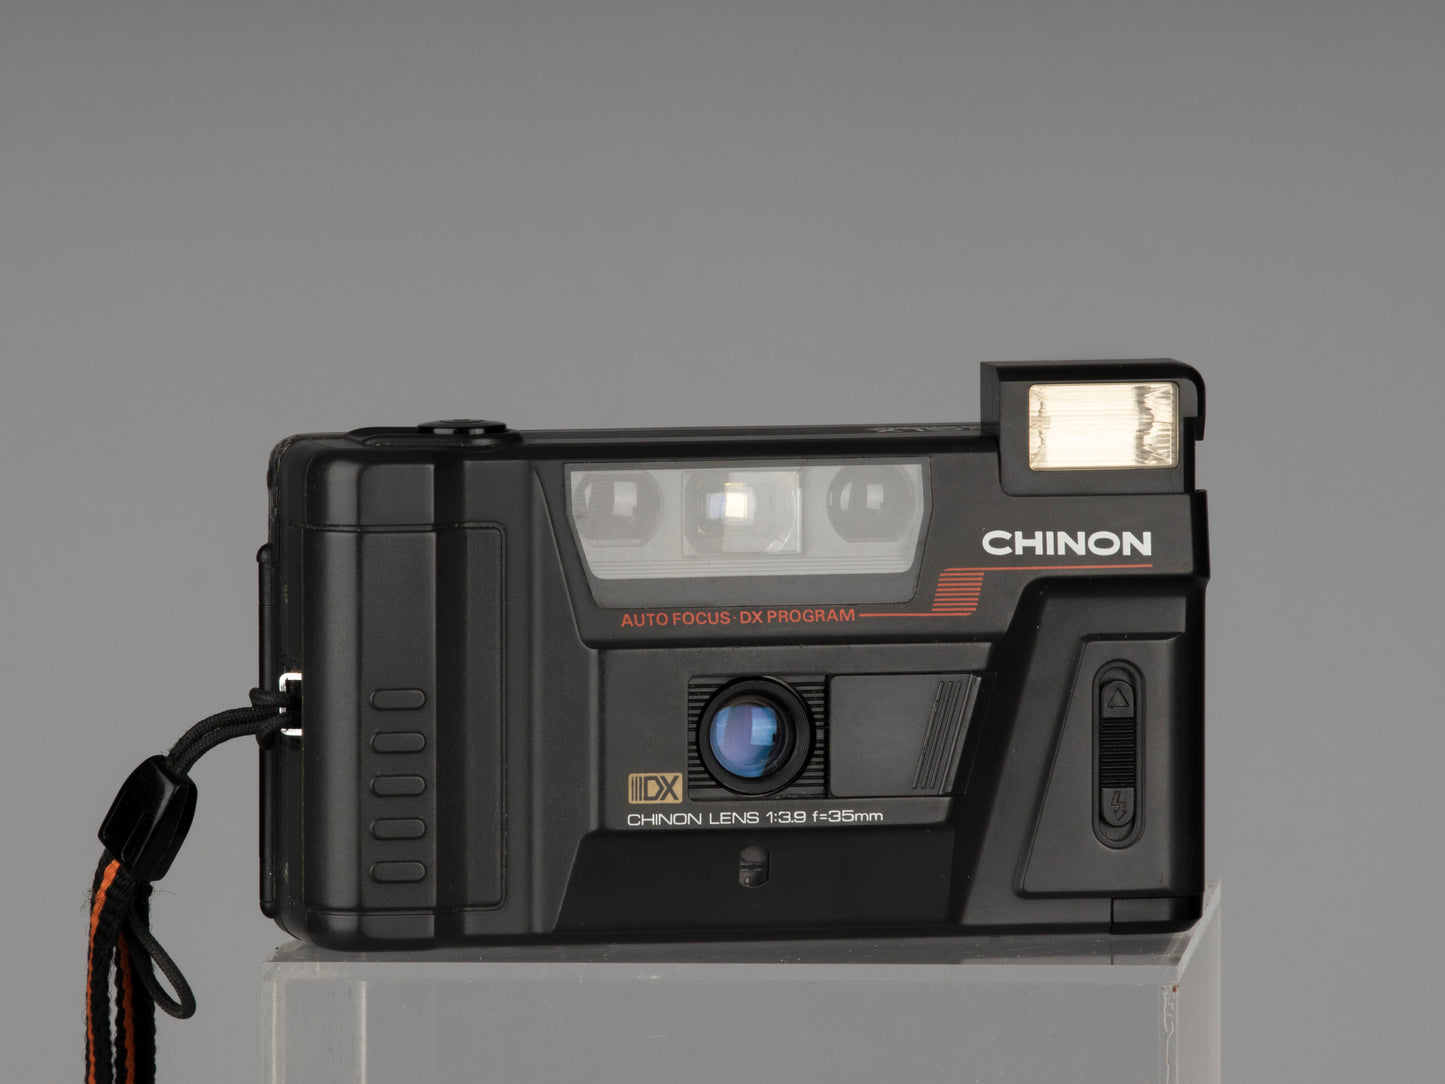 Appareil photo argentique Chinon Auto GLX autofocus 35 mm avec étui